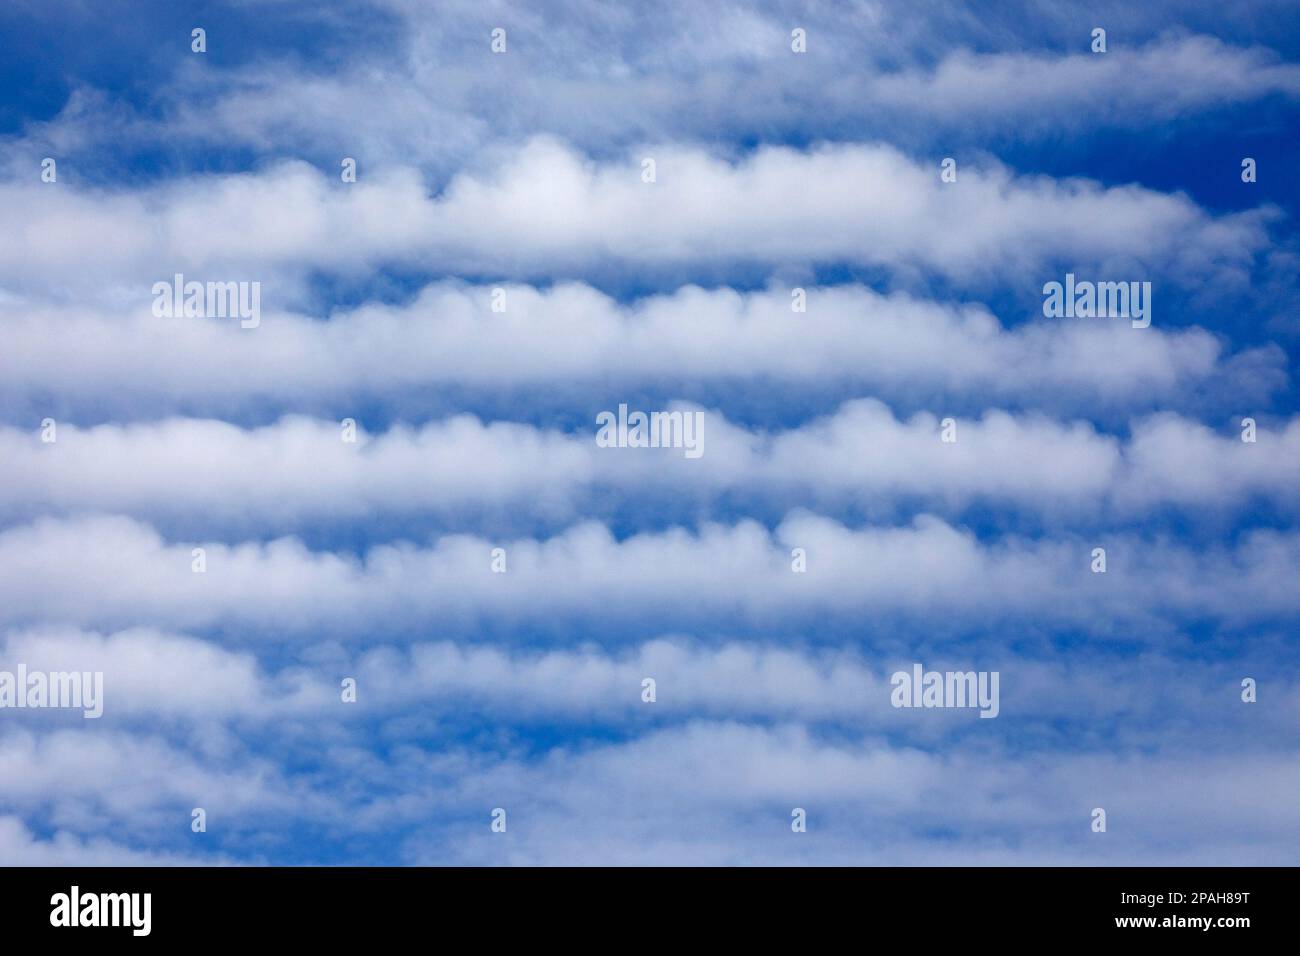 Nebenstraßen, eine Art Wolkenbildung, die auch als horizontale konvektive Rollen bezeichnet wird, in blauem Himmel. Calgary, Alberta, Kanada Stockfoto